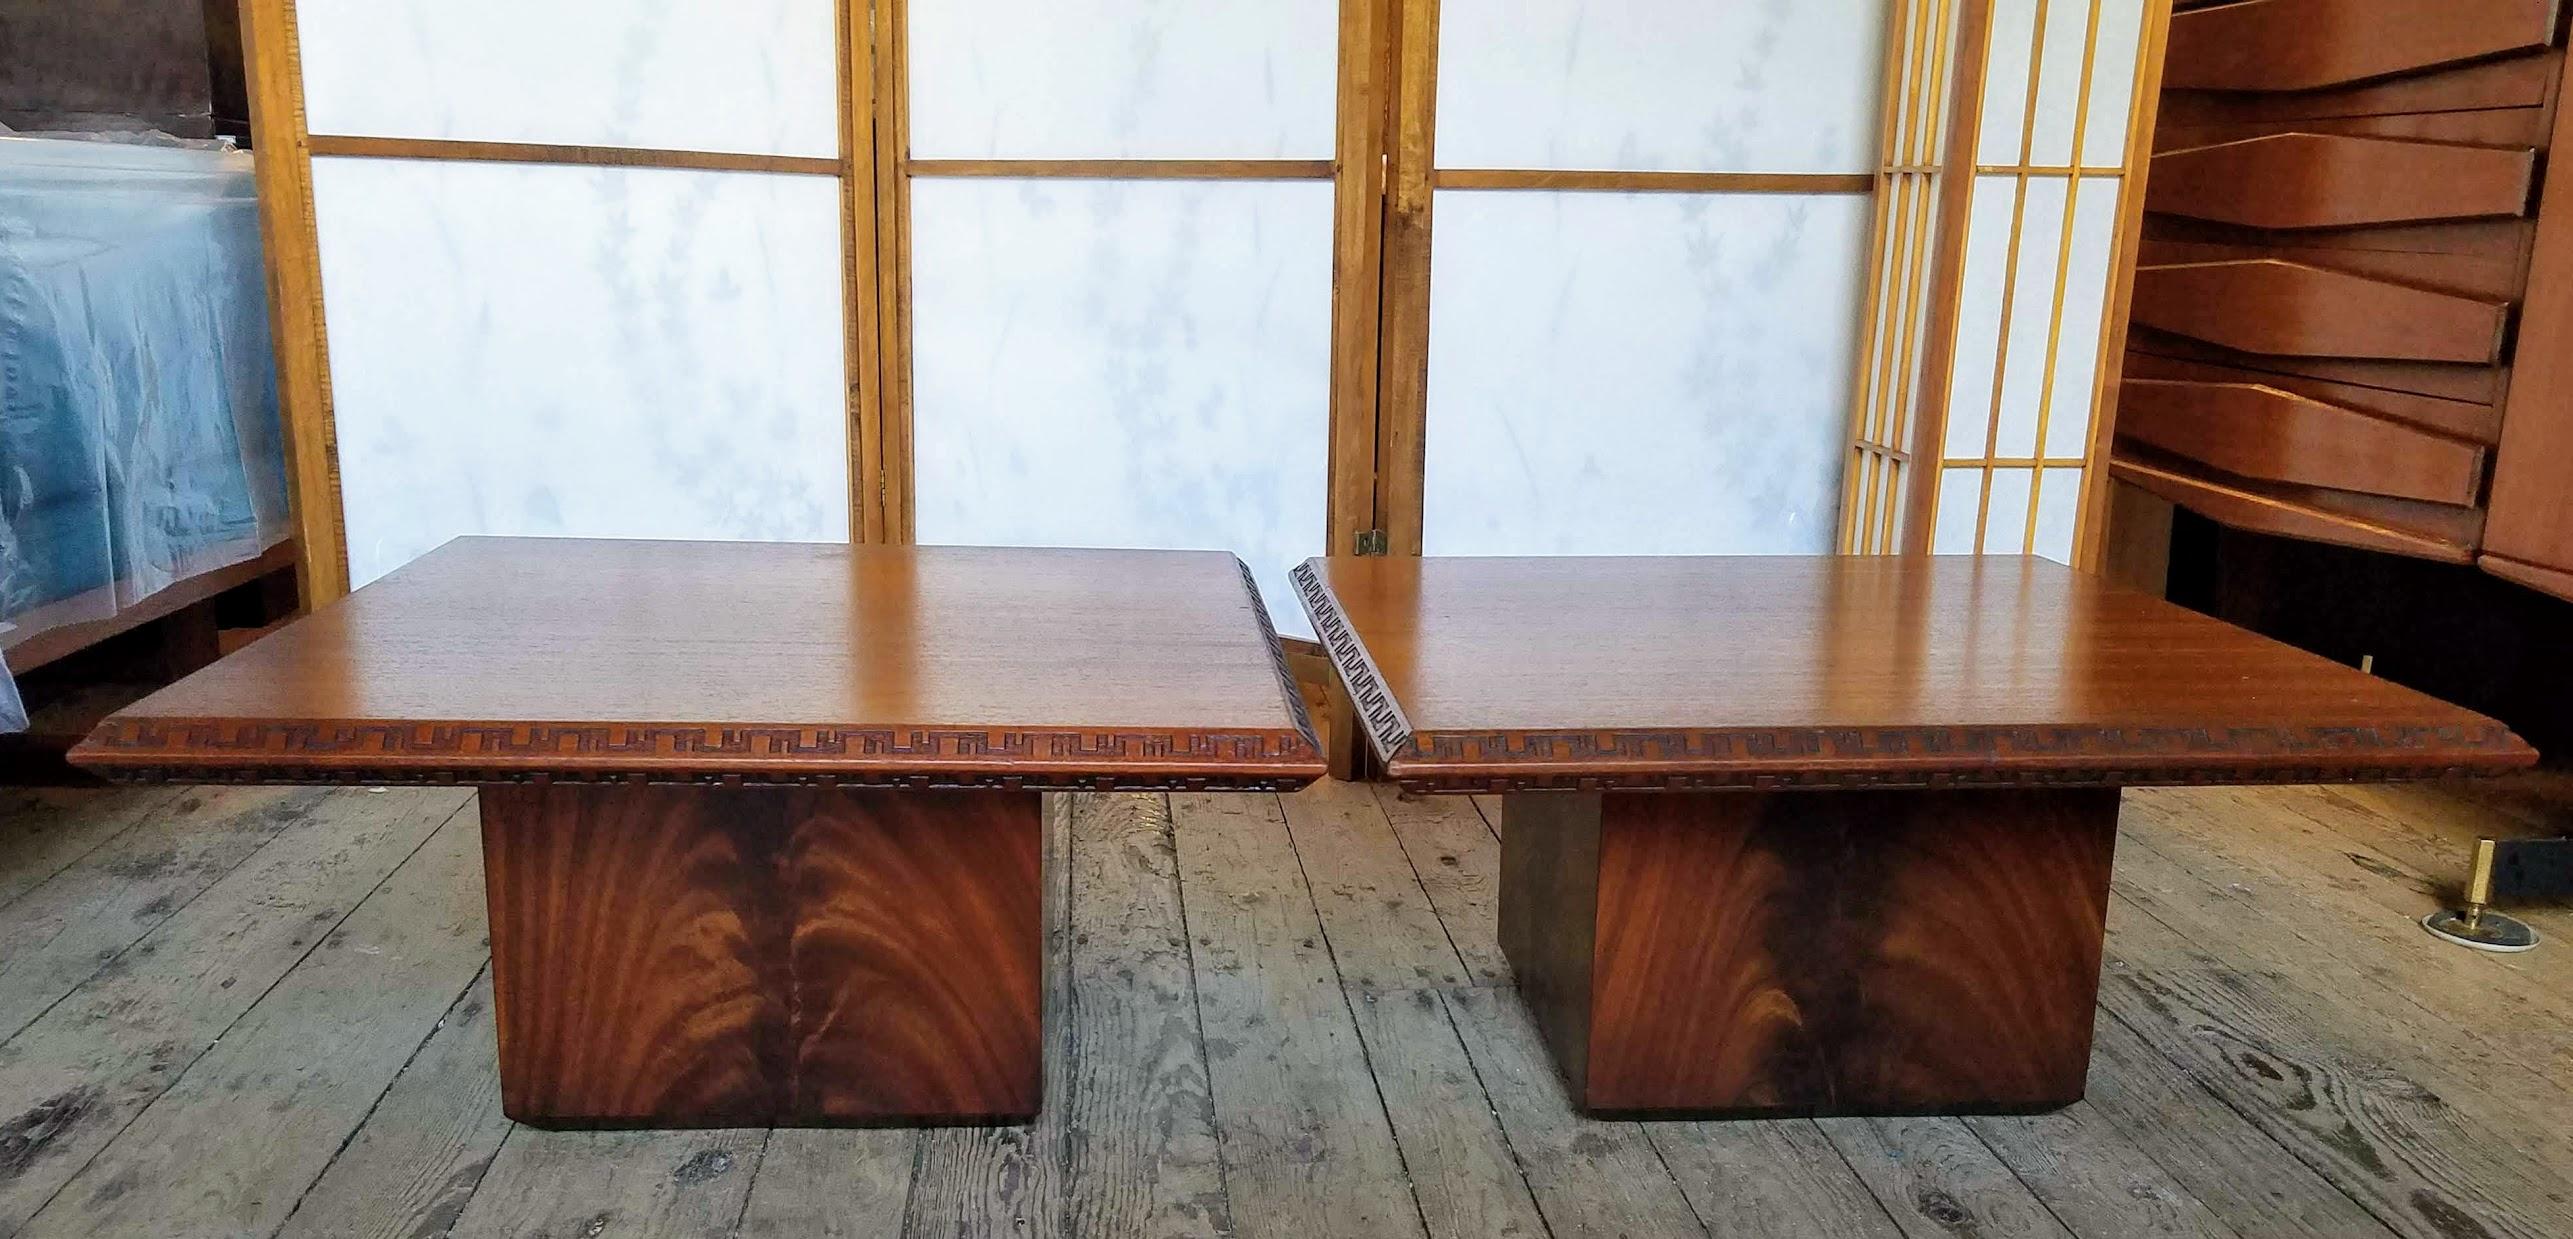 Paire de tables basses ou petites tables basses en acajou de Frank Lloyd Wright conçues pour Heritage Henredon pour leur ligne Taliesin introduite en 1955.
Les deux tables sont signées et datées avec leur numéro de modèle.
Les tables sont en